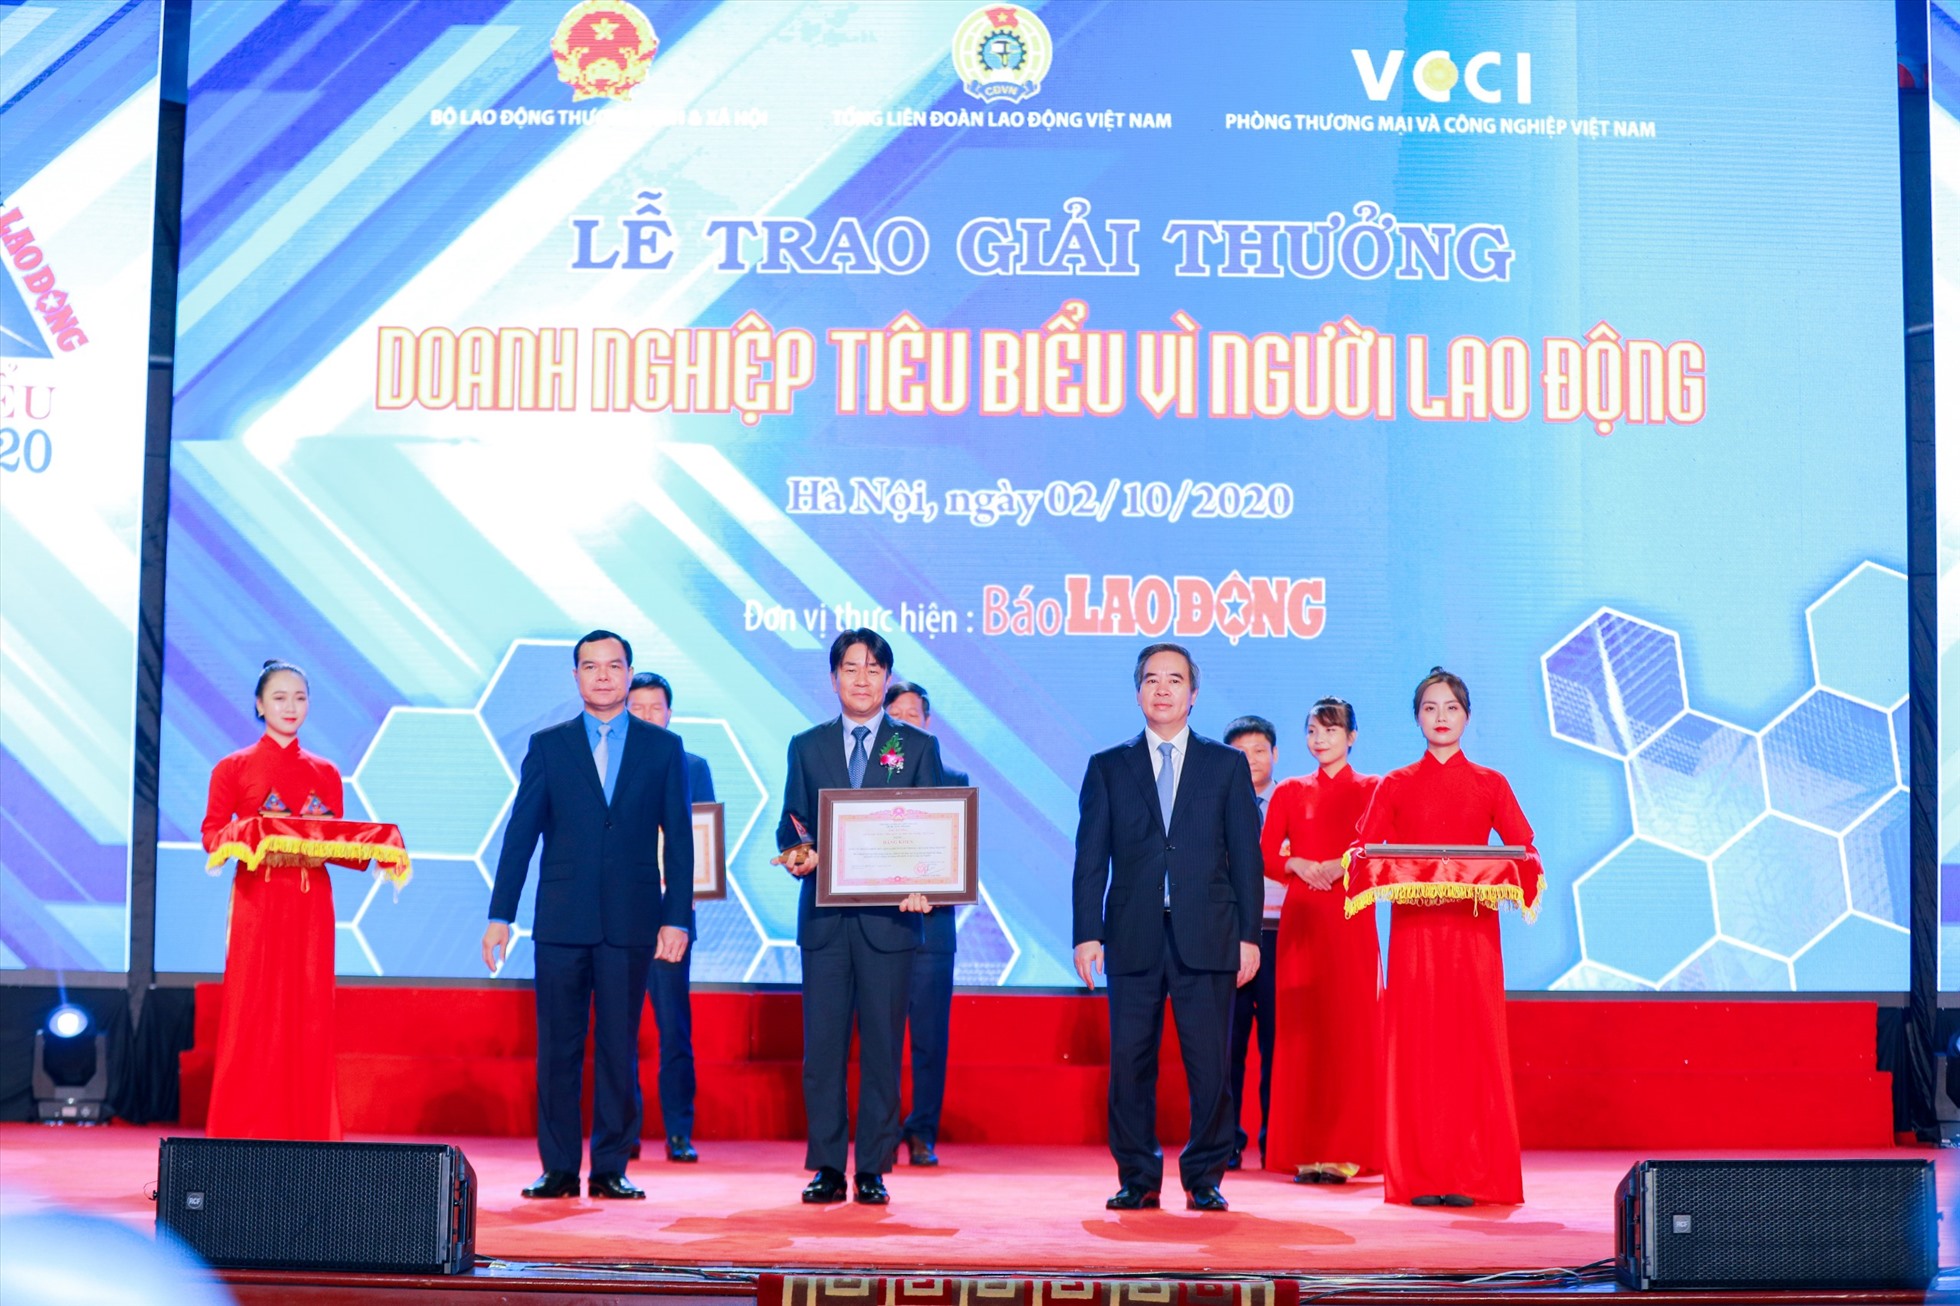 Ông Lee Byeong Kuk, Tổng Giám đốc Công ty TNHH Samsung Electronics Việt Nam-Thái Nguyên nhận Bằng khen của Thủ tướng Chính phủ dành cho Doanh nghiệp tiêu biểu vì người lao động. Ảnh: Samsung Việt Nam.